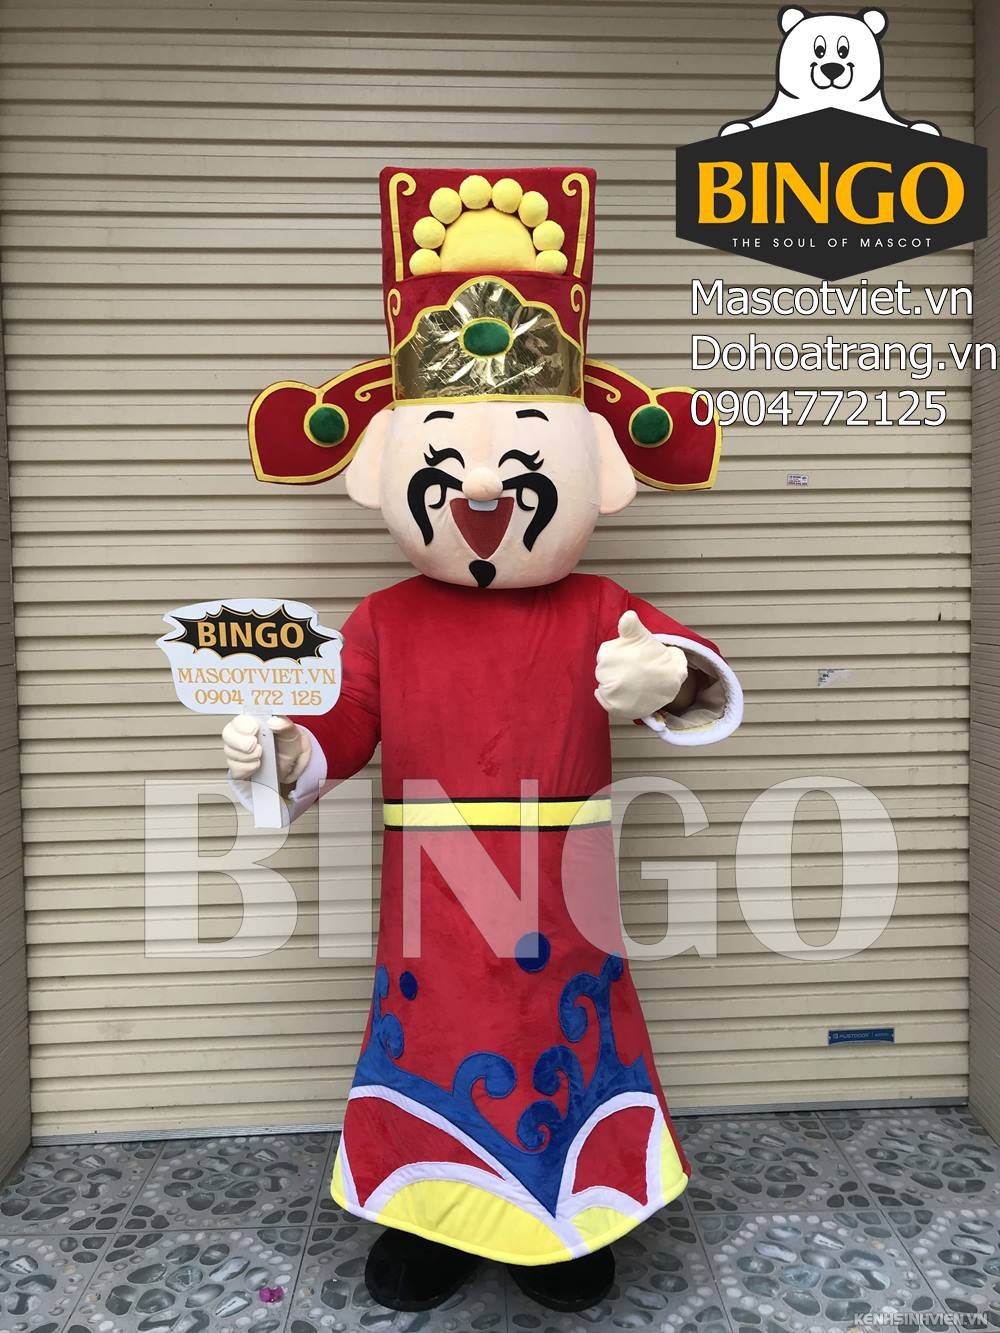 mascot-than-tai-06-bingo-costumes-0904772125-1.jpg